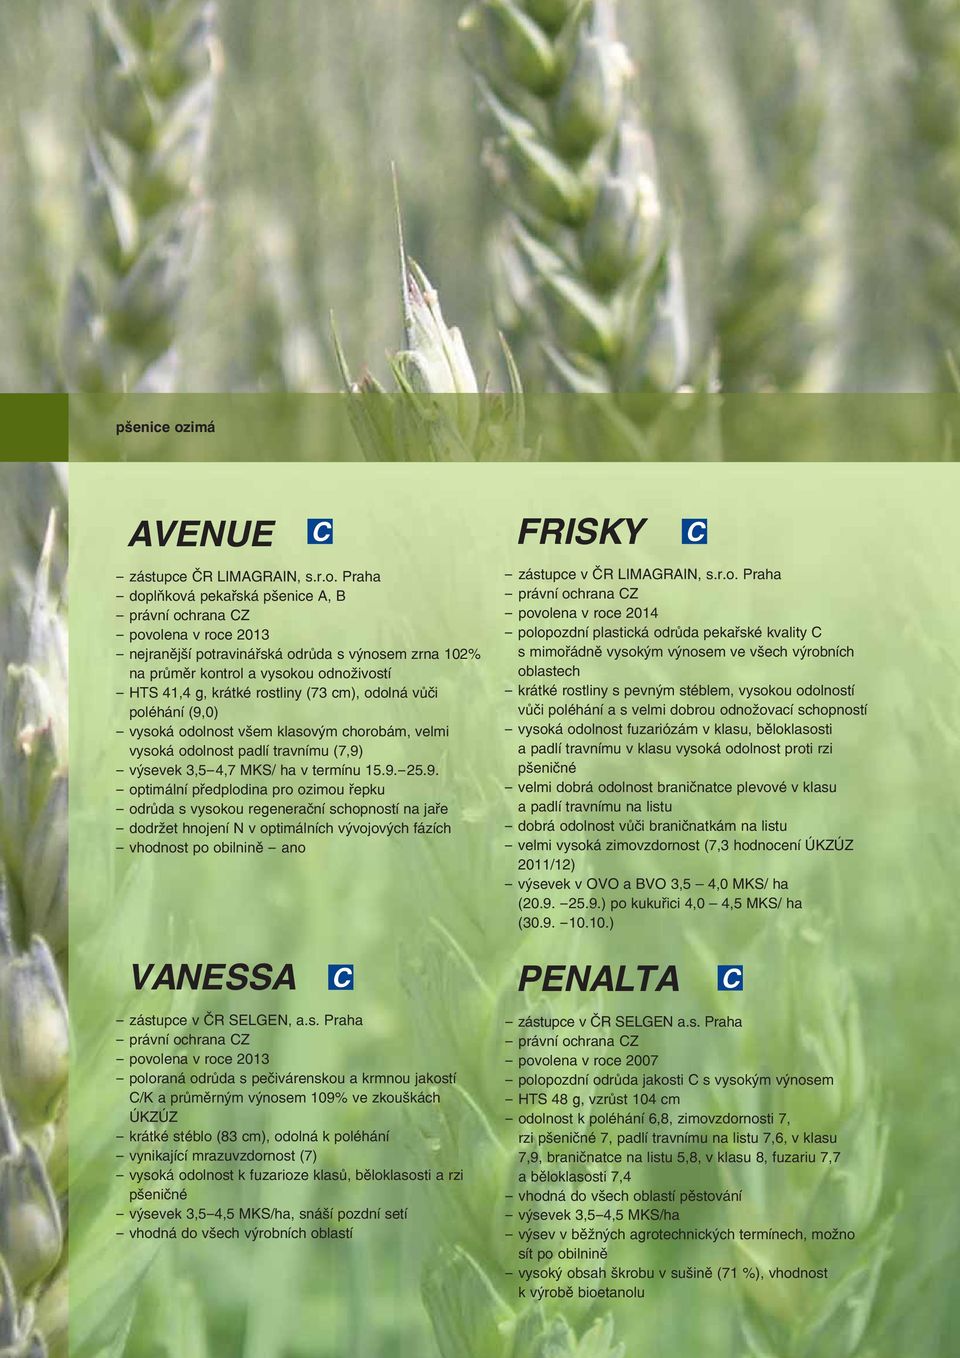 Praha - doplňková pekařská pšenice A, B - povolena v roce 2013 - nejranější potravinářská odrůda s výnosem zrna 102% na průměr kontrol a vysokou odnoživostí - HTS 41,4 g, krátké rostliny (73 cm),